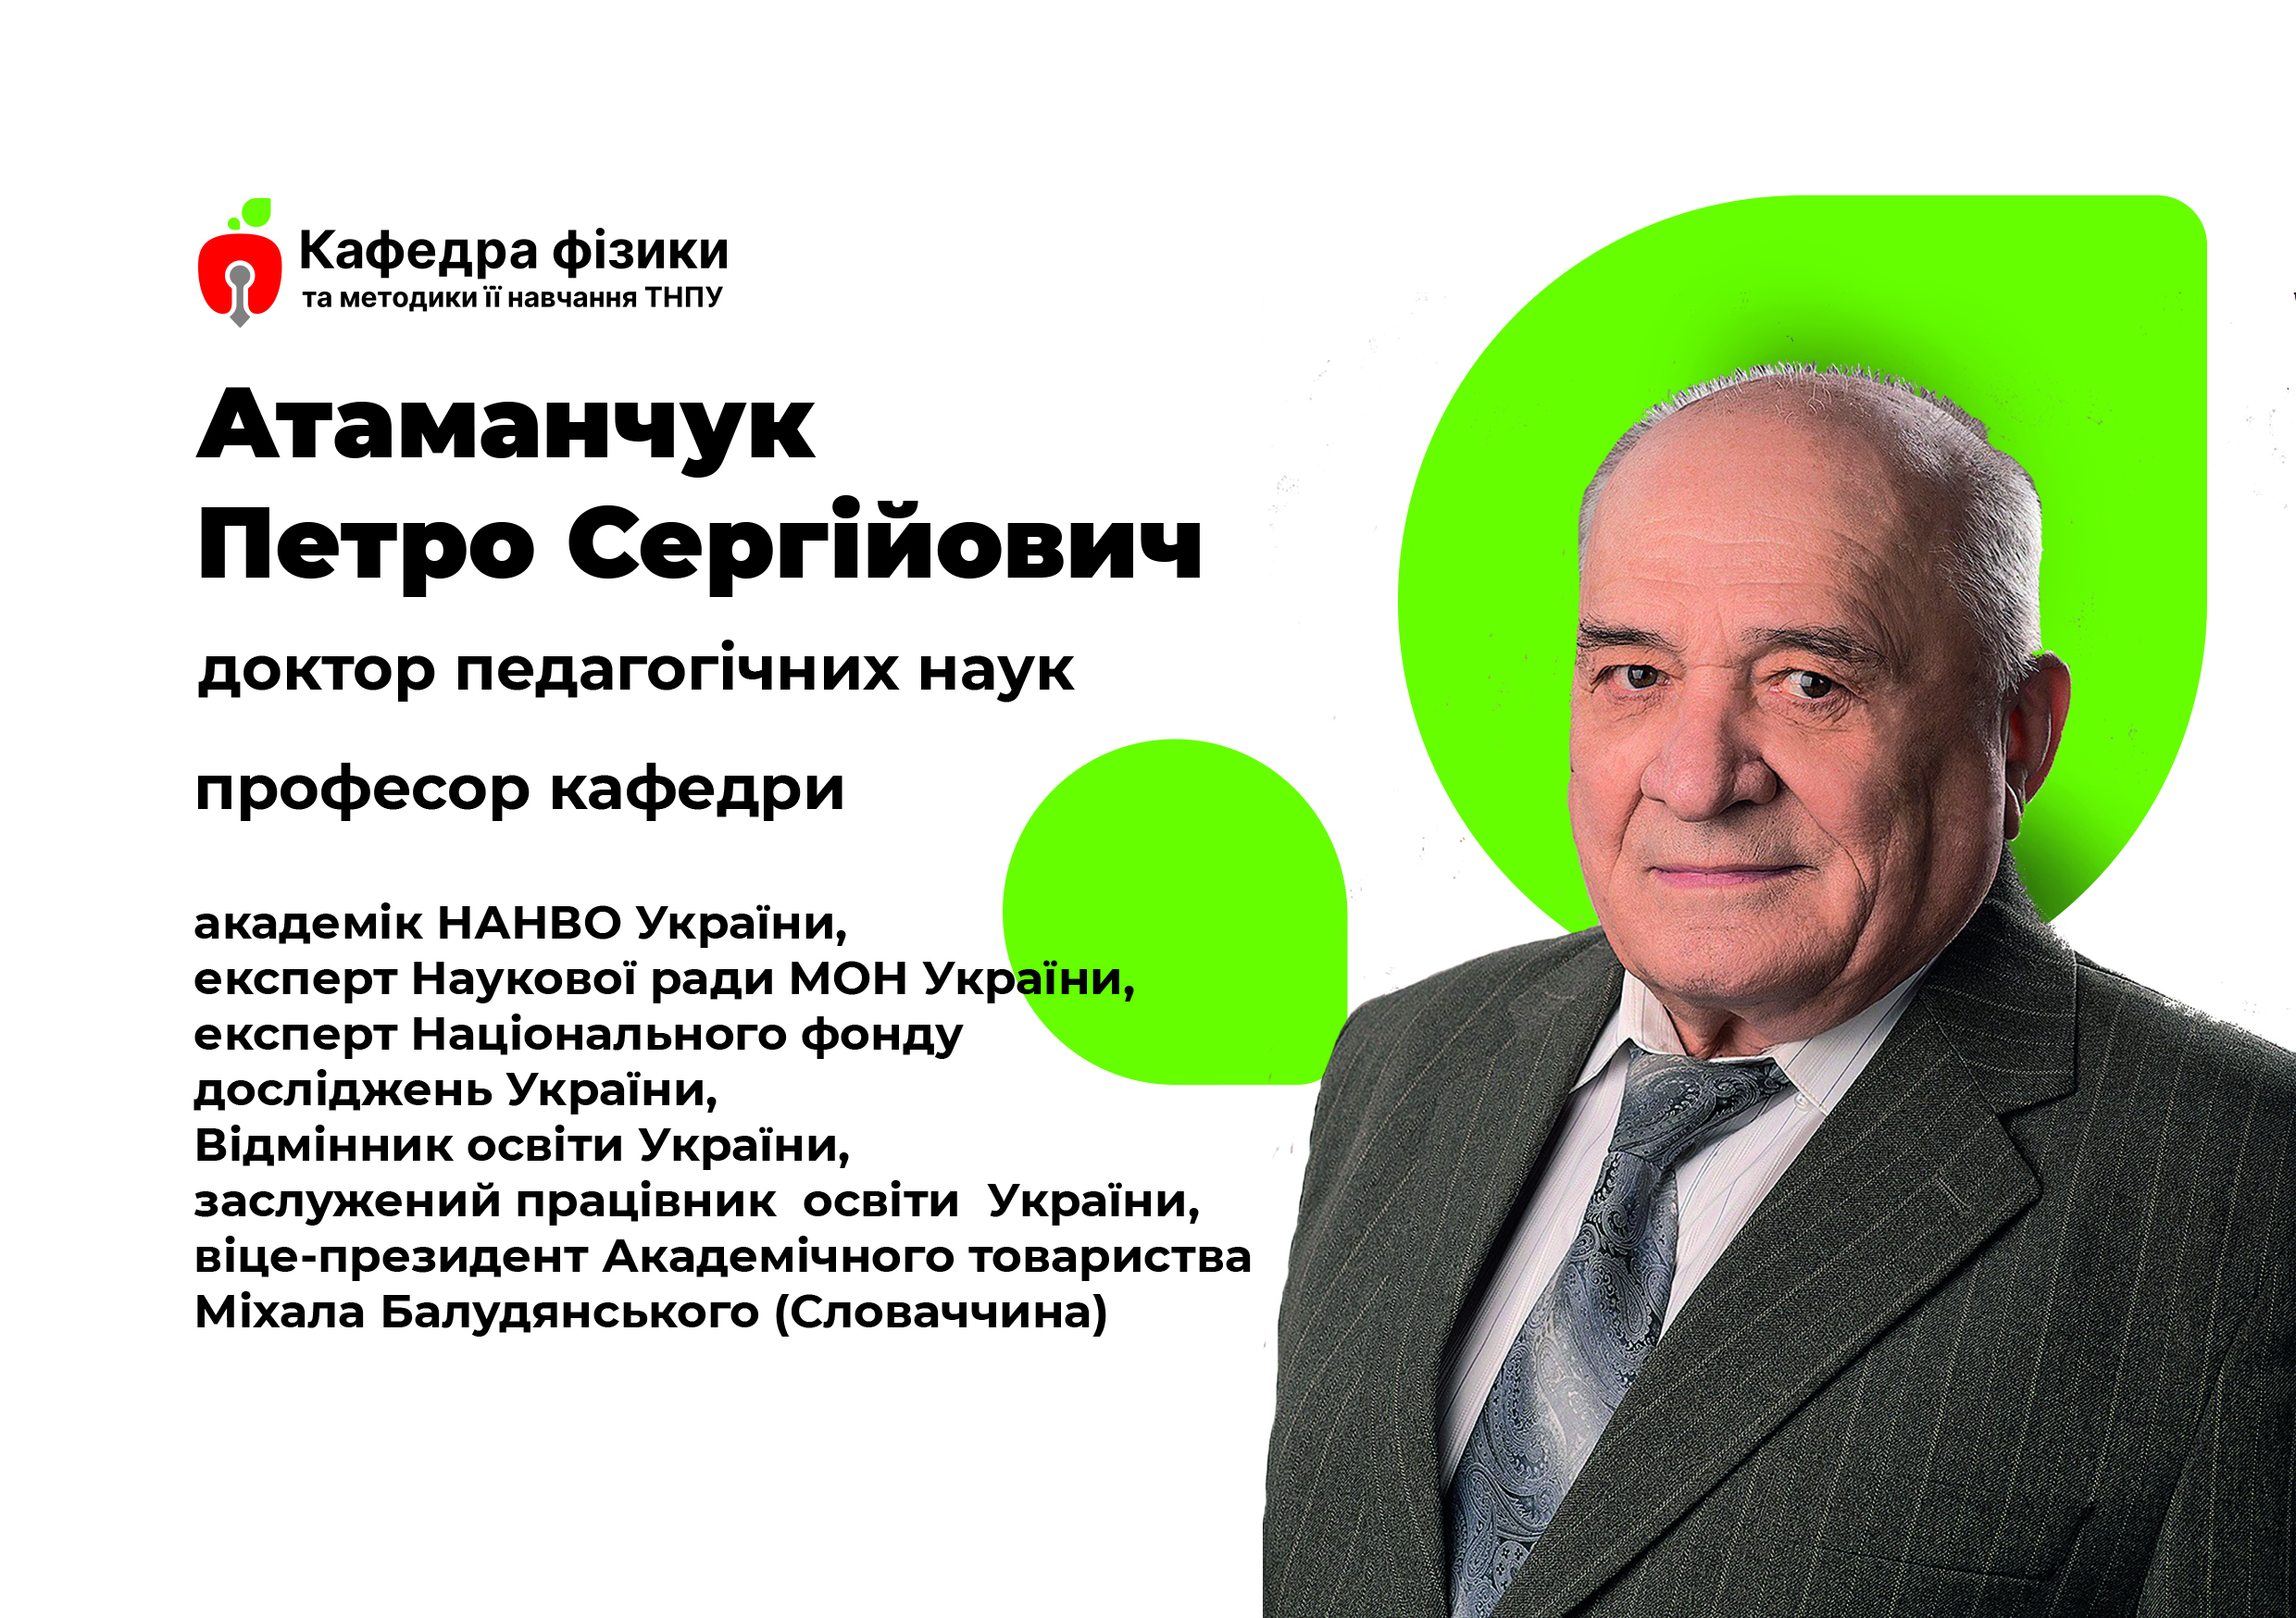 Атаманчук Петро Сергійович